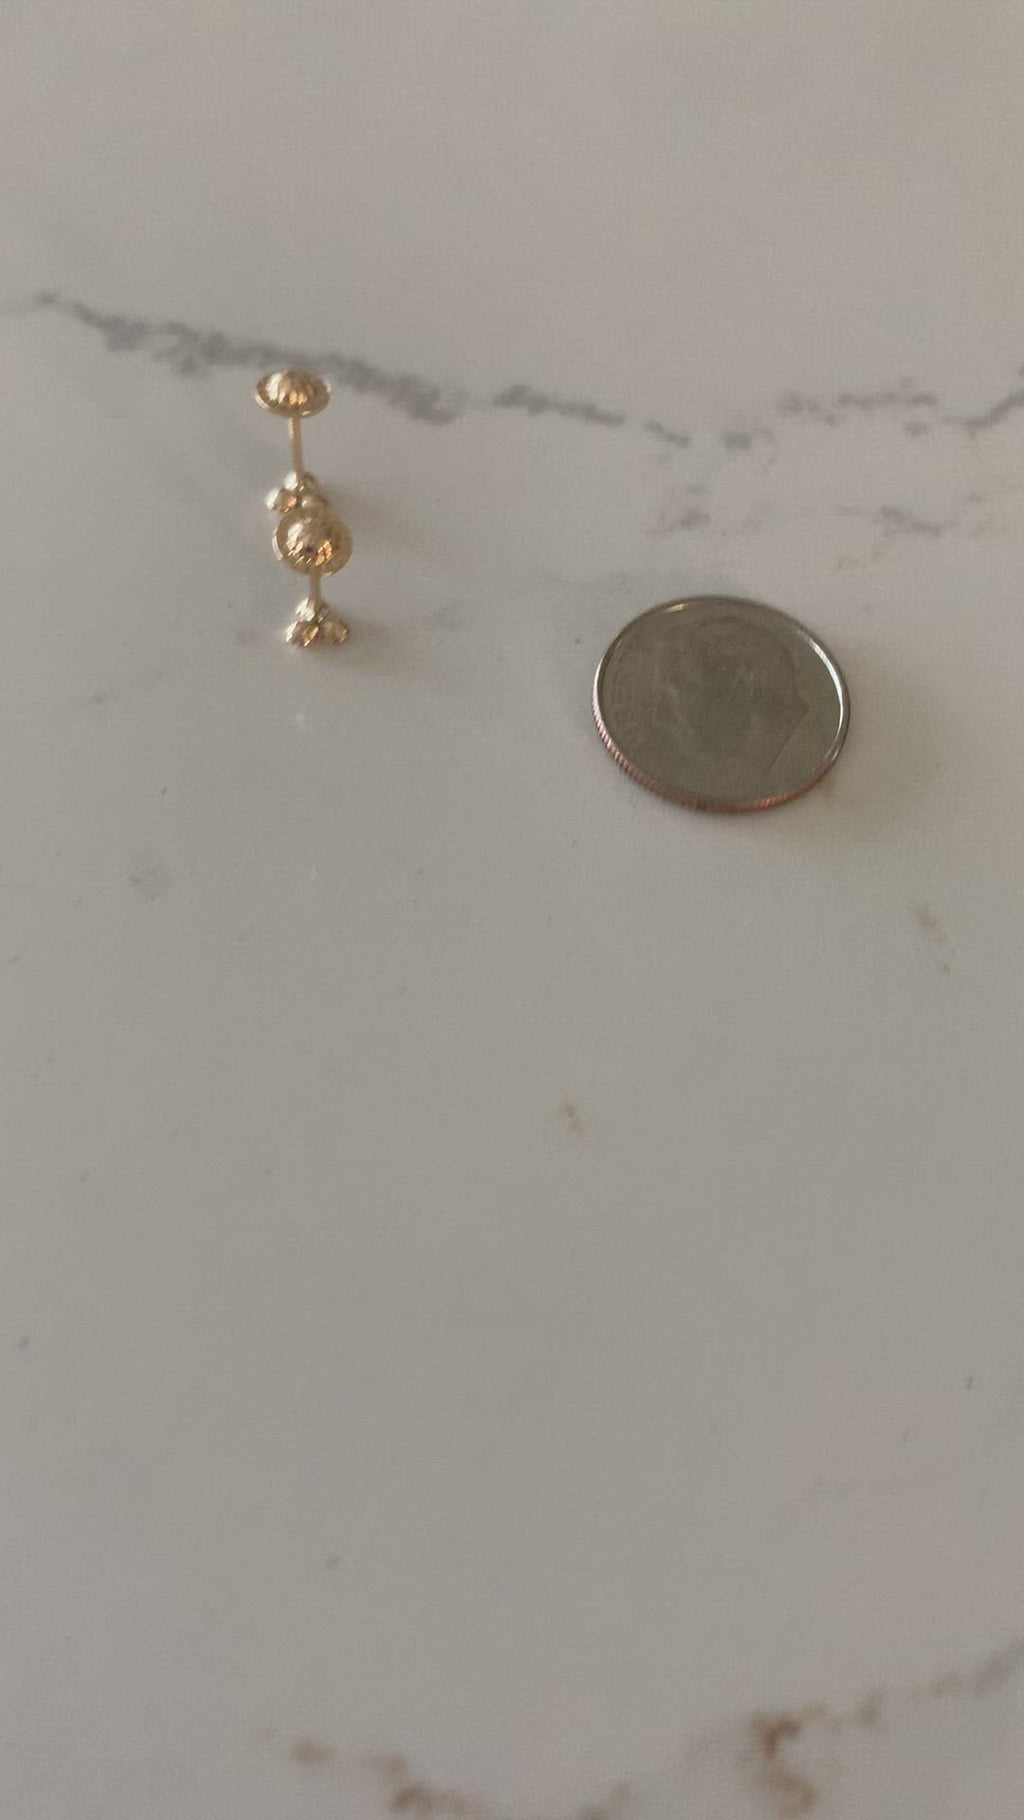 Tiny Cz Stud Earrings Dainty Minimalist Earrings Sterling Silver